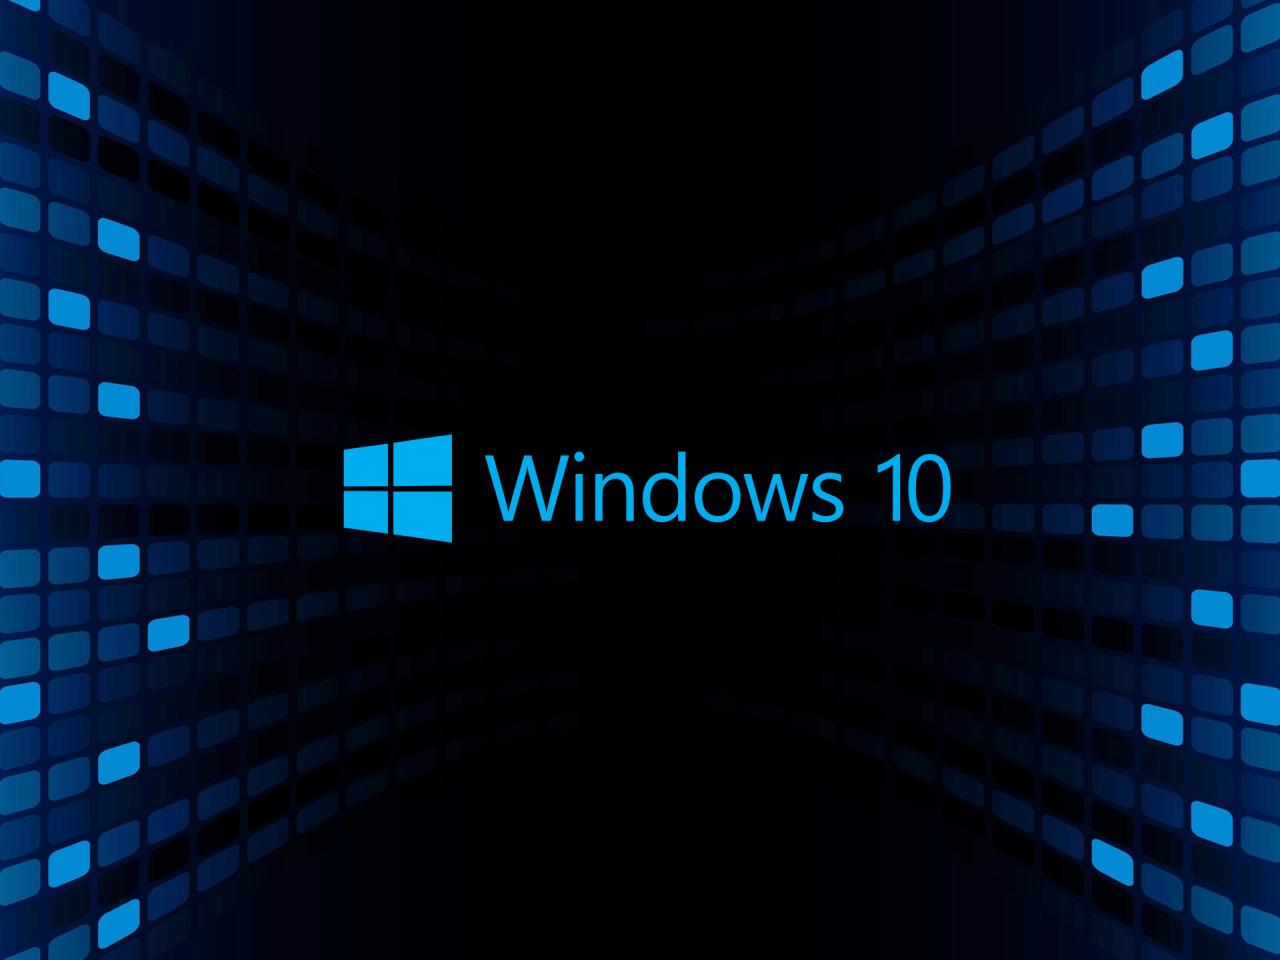 fond d'écran windows 10 hd 3d pour ordinateur de bureau,bleu,texte,police de caractère,la technologie,bleu électrique